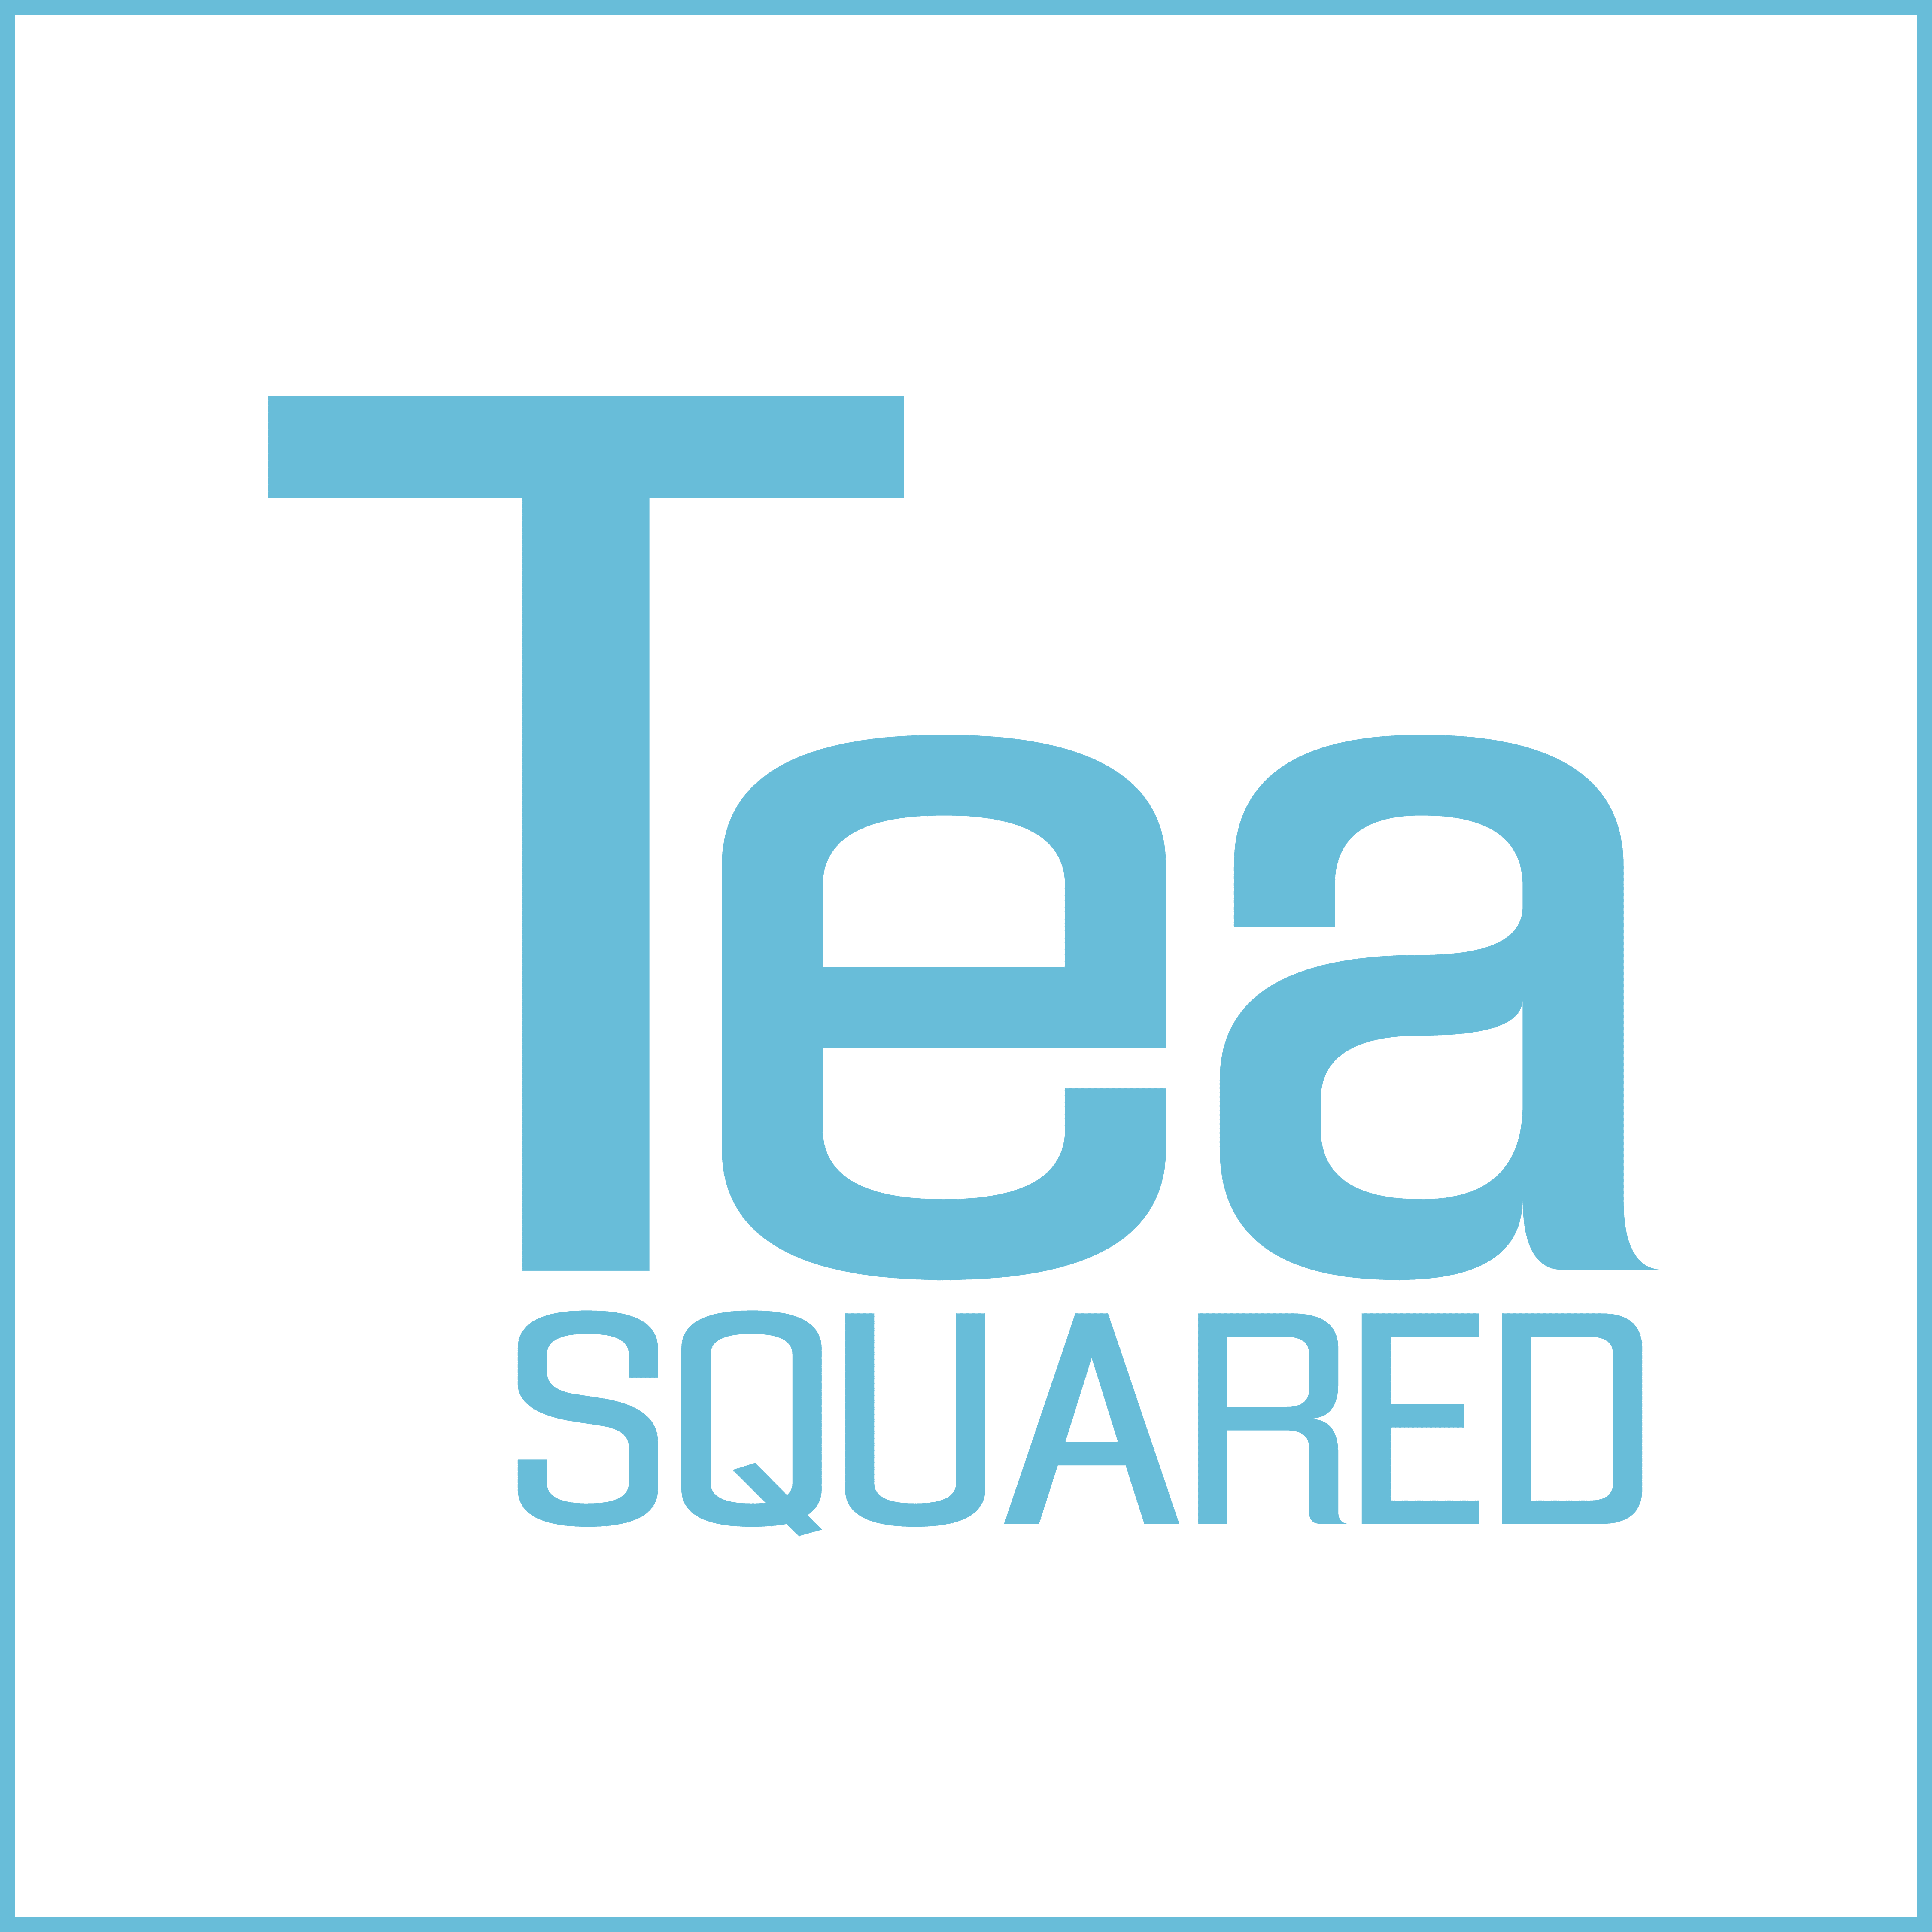 Tea Squared